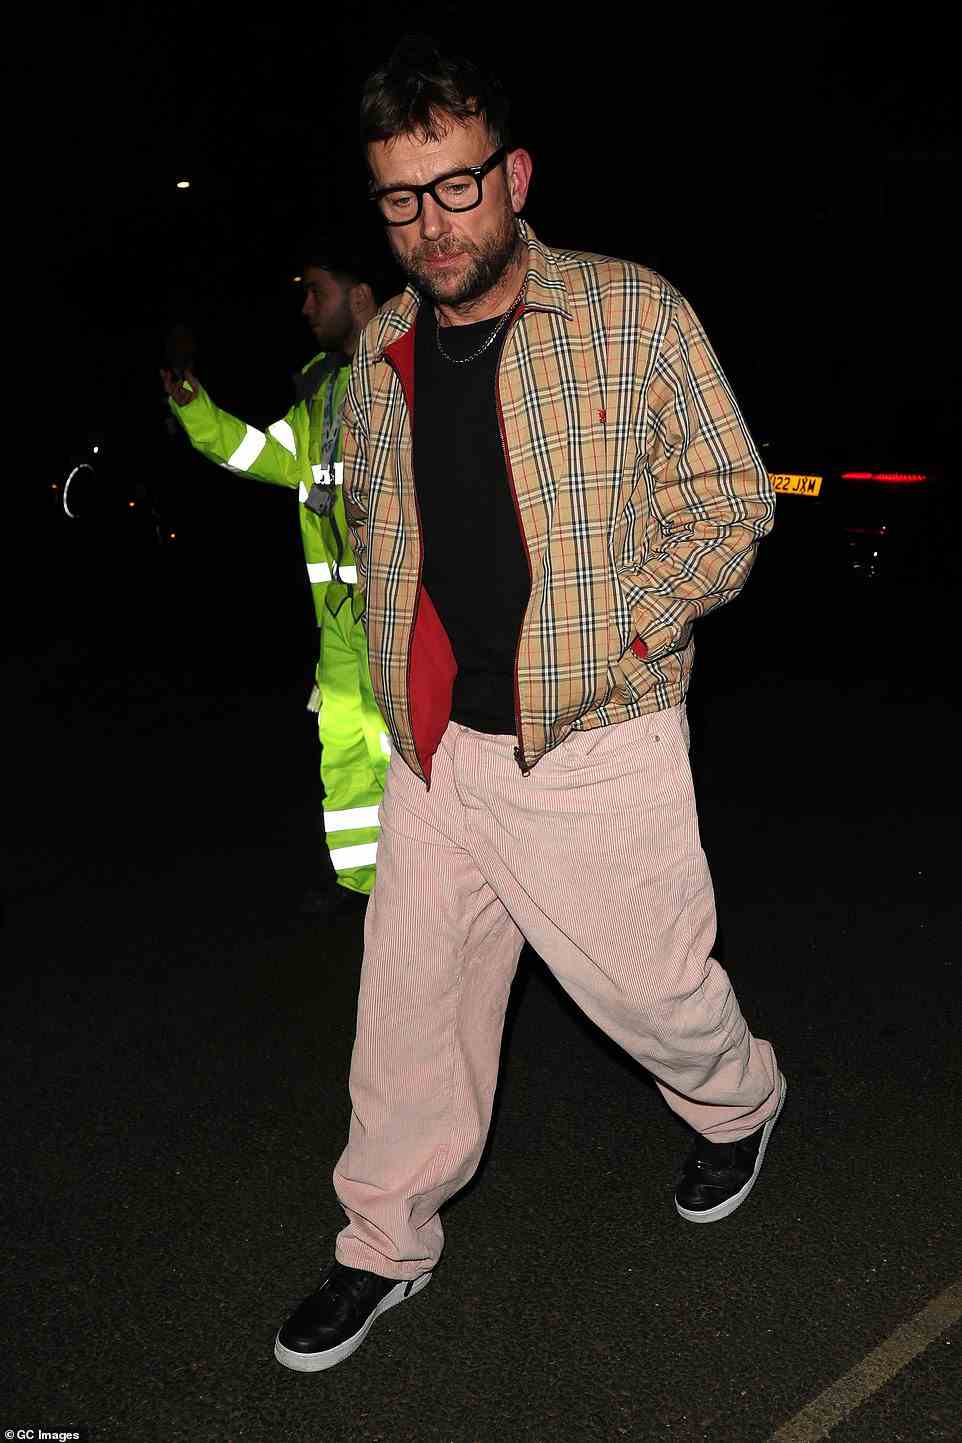 Stylisch: Damon Albarn trug eine charakteristische Burberry-Bomberjacke, kombiniert mit einer pinkfarbenen Cordhose und schwarzen Turnschuhen